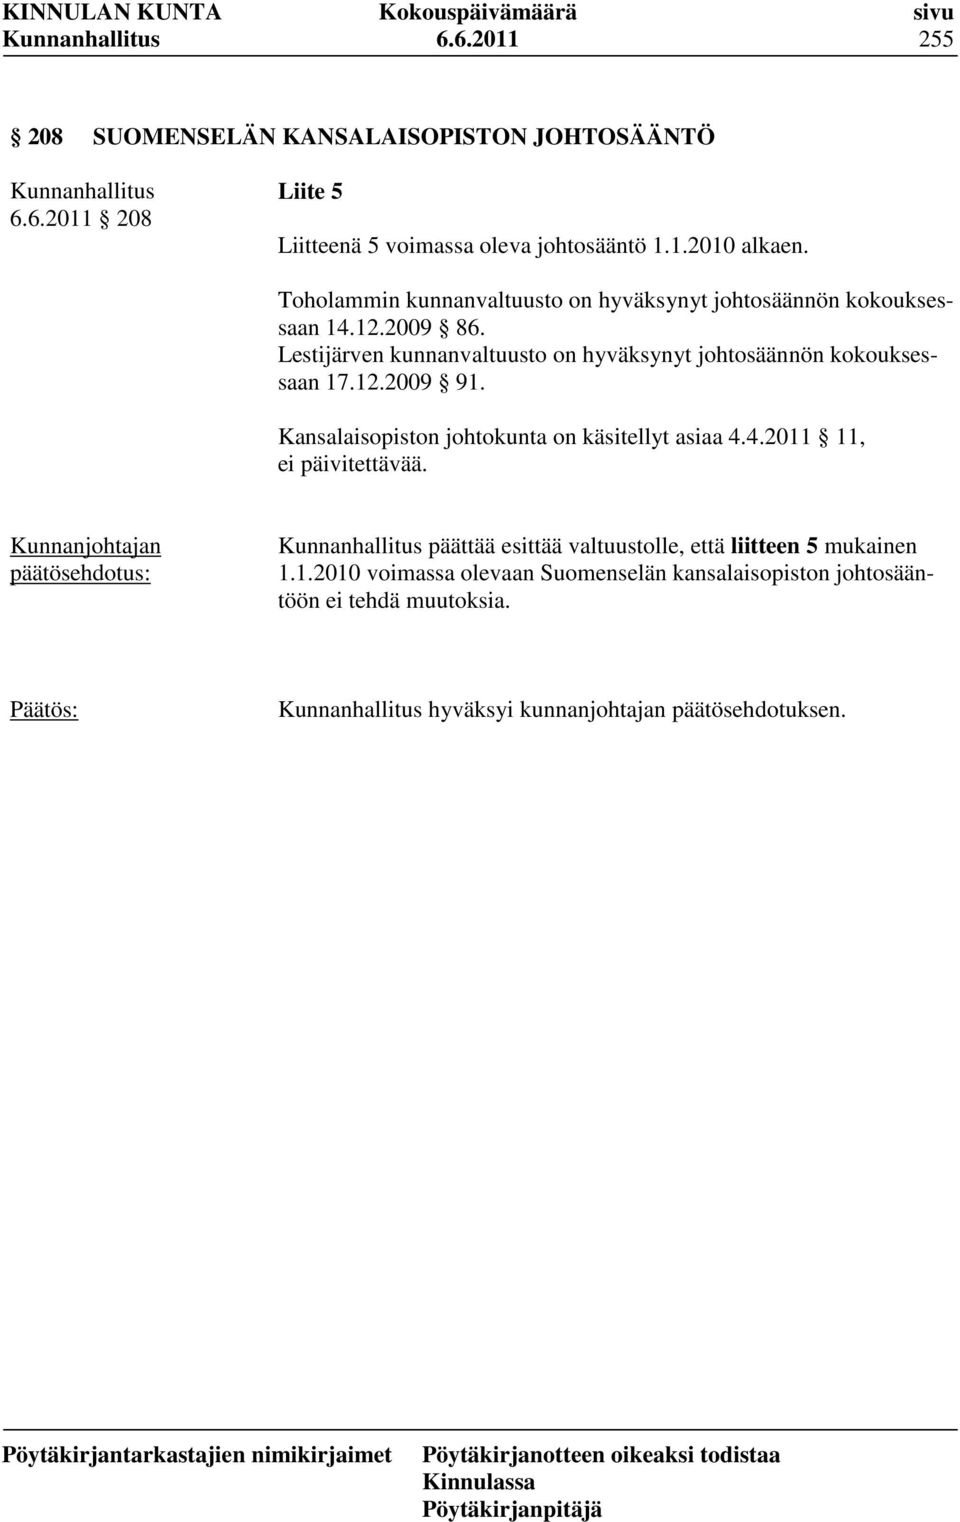 Lestijärven kunnanvaltuusto on hyväksynyt johtosäännön kokouksessaan 17.12.2009 91. Kansalaisopiston johtokunta on käsitellyt asiaa 4.